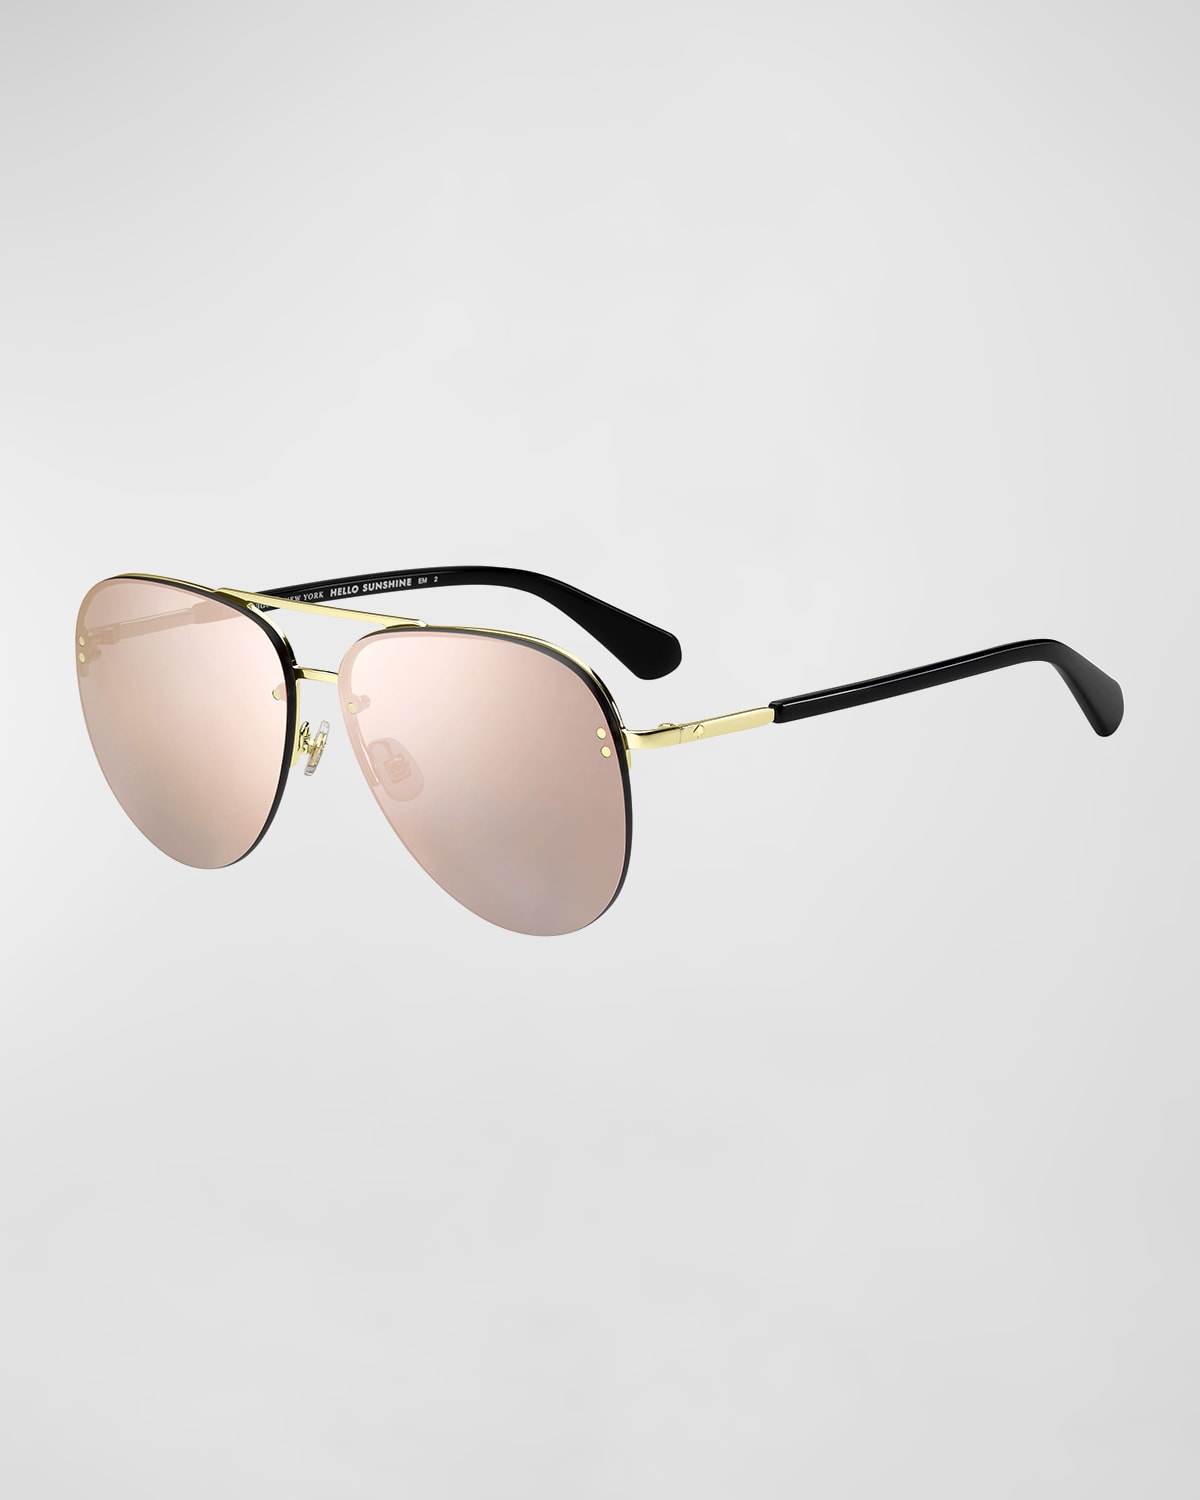 kate spade new york jakaylas mirrored aviator sunglasses | Neiman Marcus